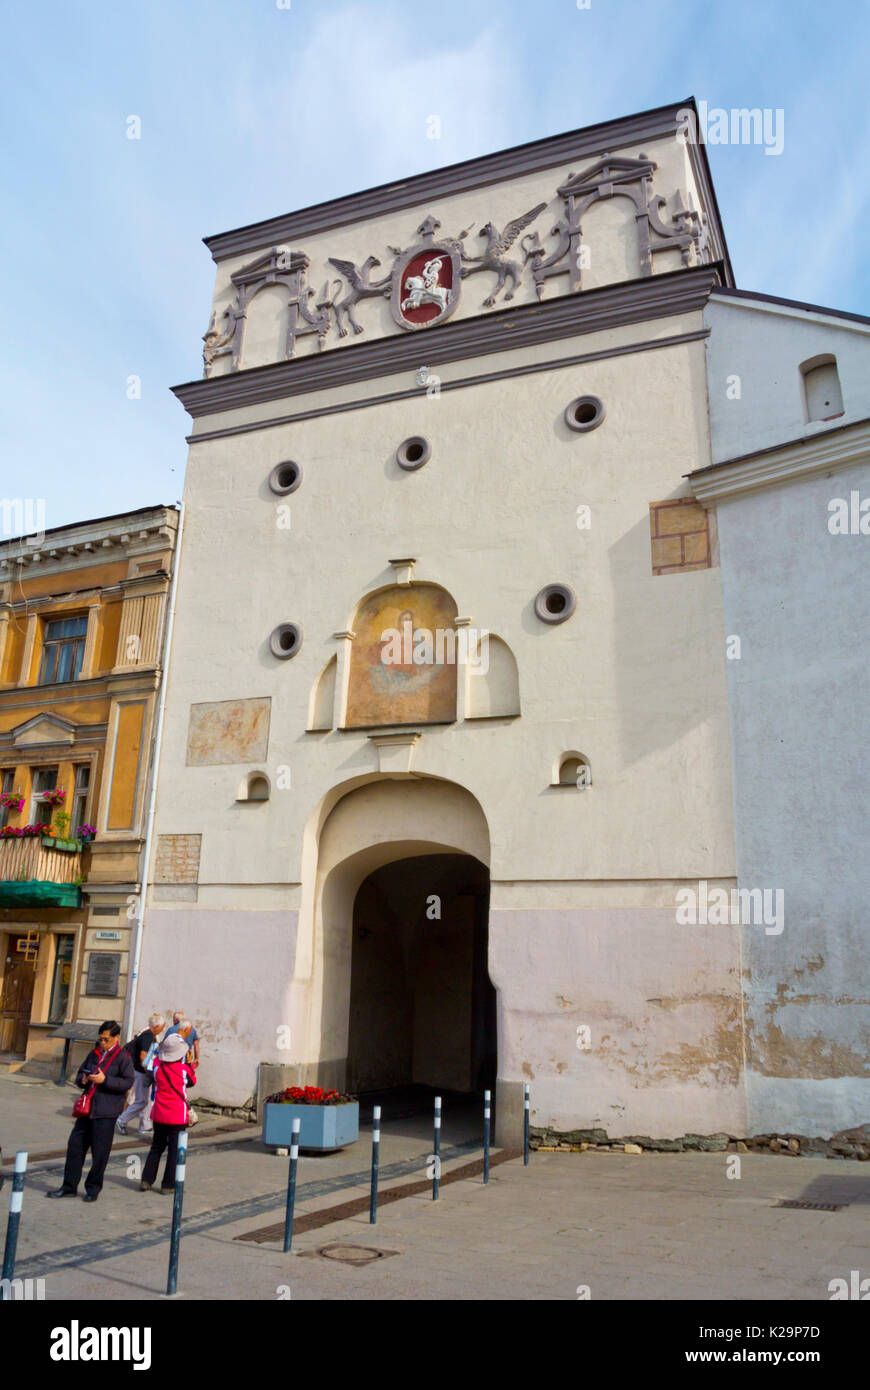 Ausros vartai, Gates of Dawn, gate to old town, Vilnius, Lithuania Stock Photo